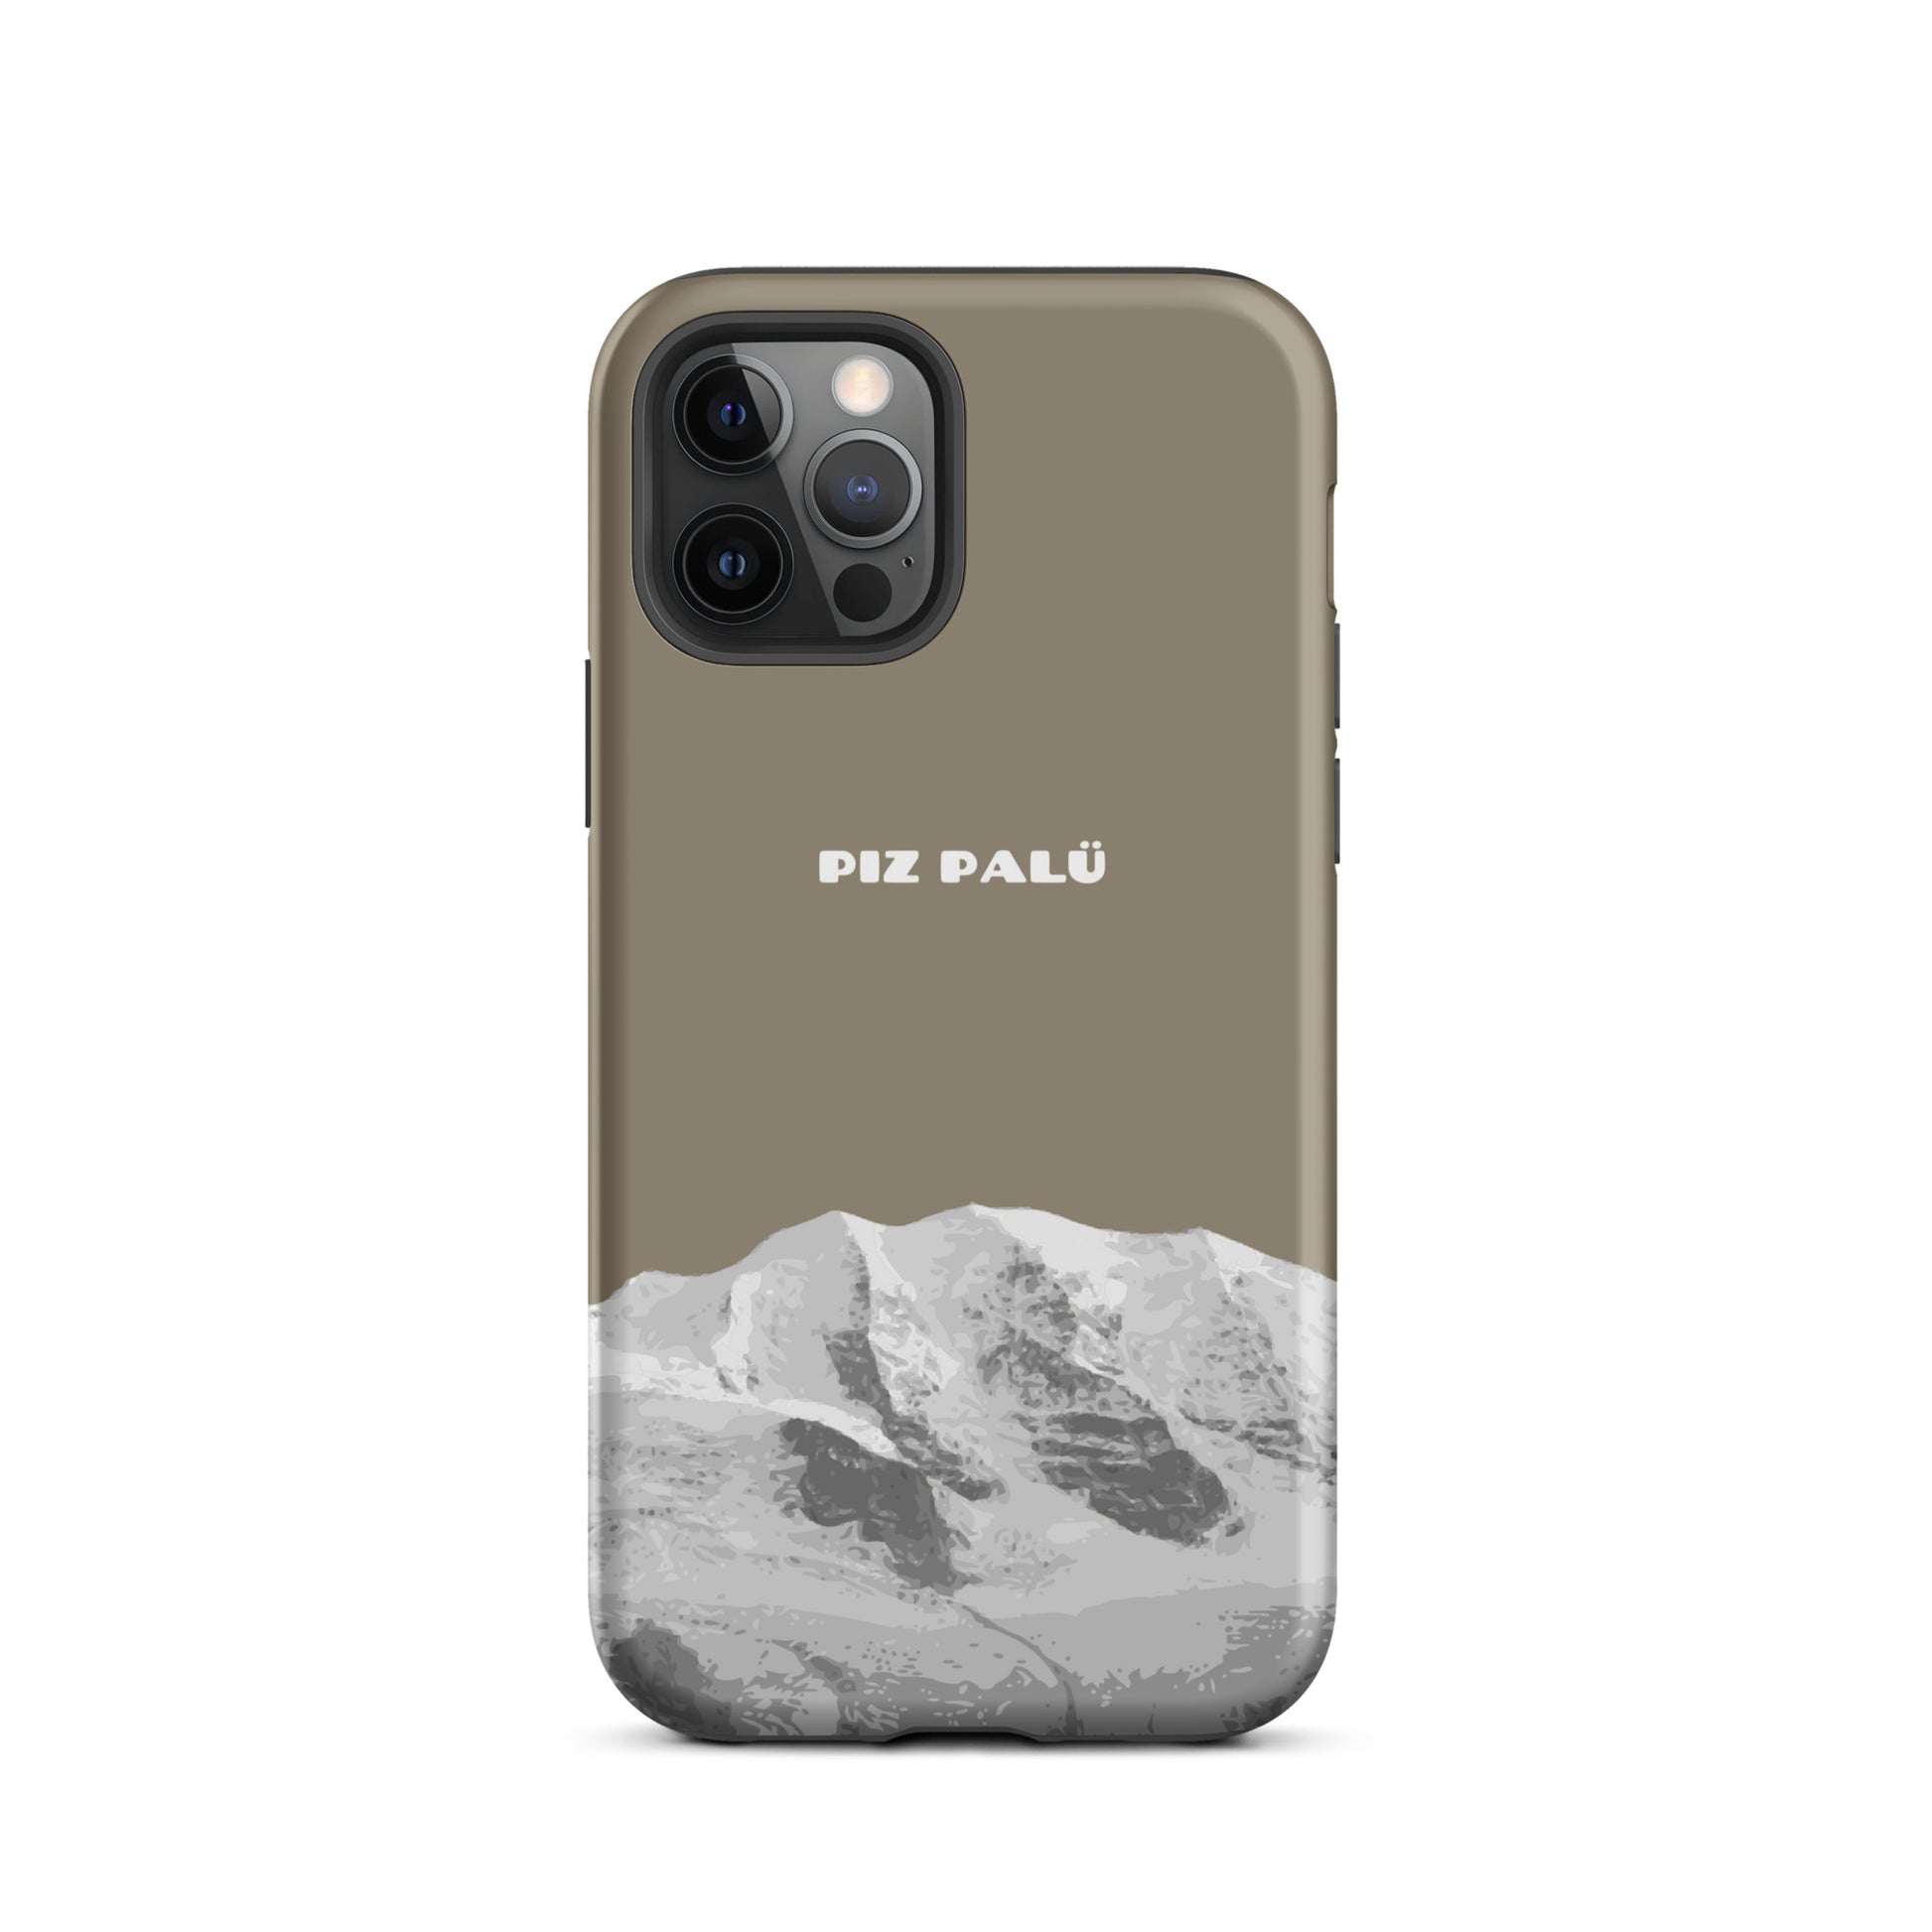 Hülle für das iPhone 12 Pro von Apple in der Farbe Graubrau, dass den Piz Palü in Graubünden zeigt.